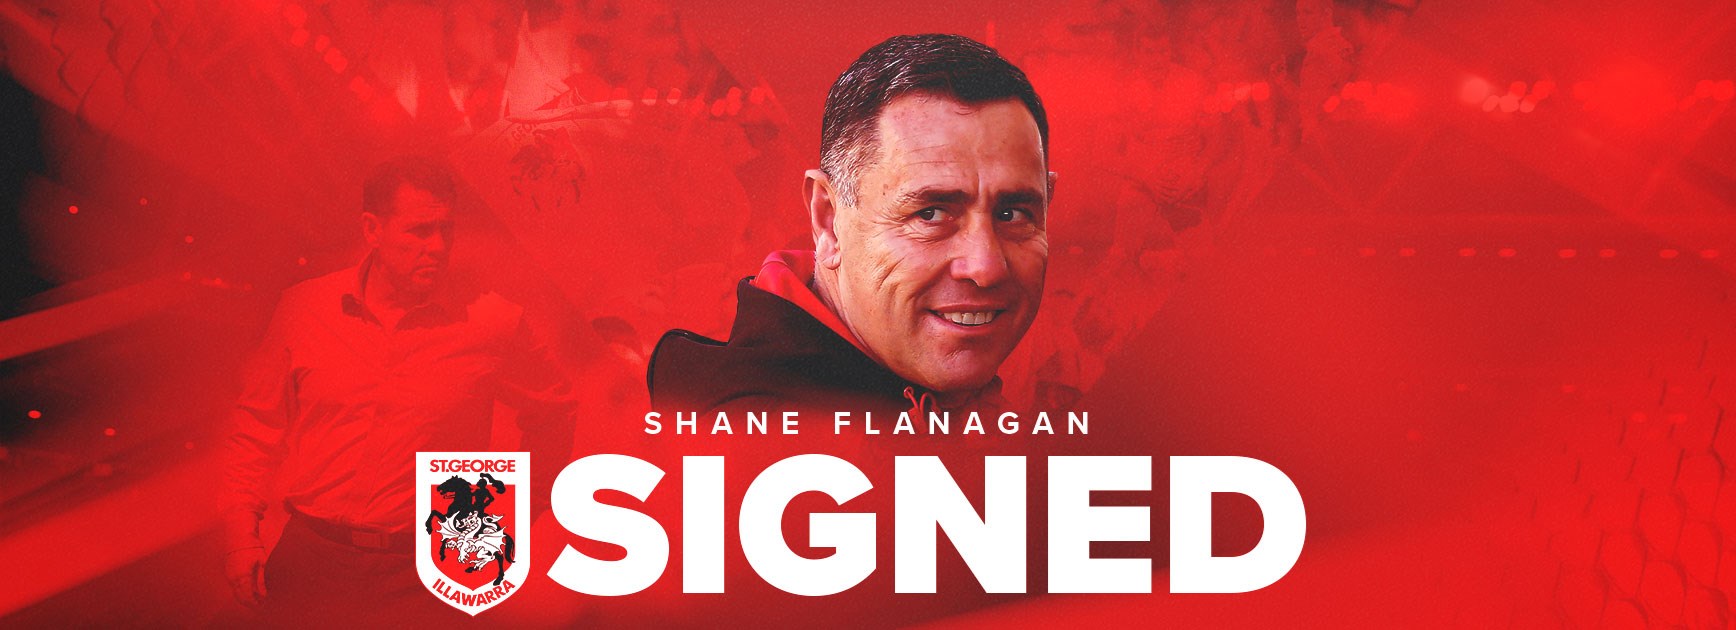 Dragons appoint Shane Flanagan as head coach